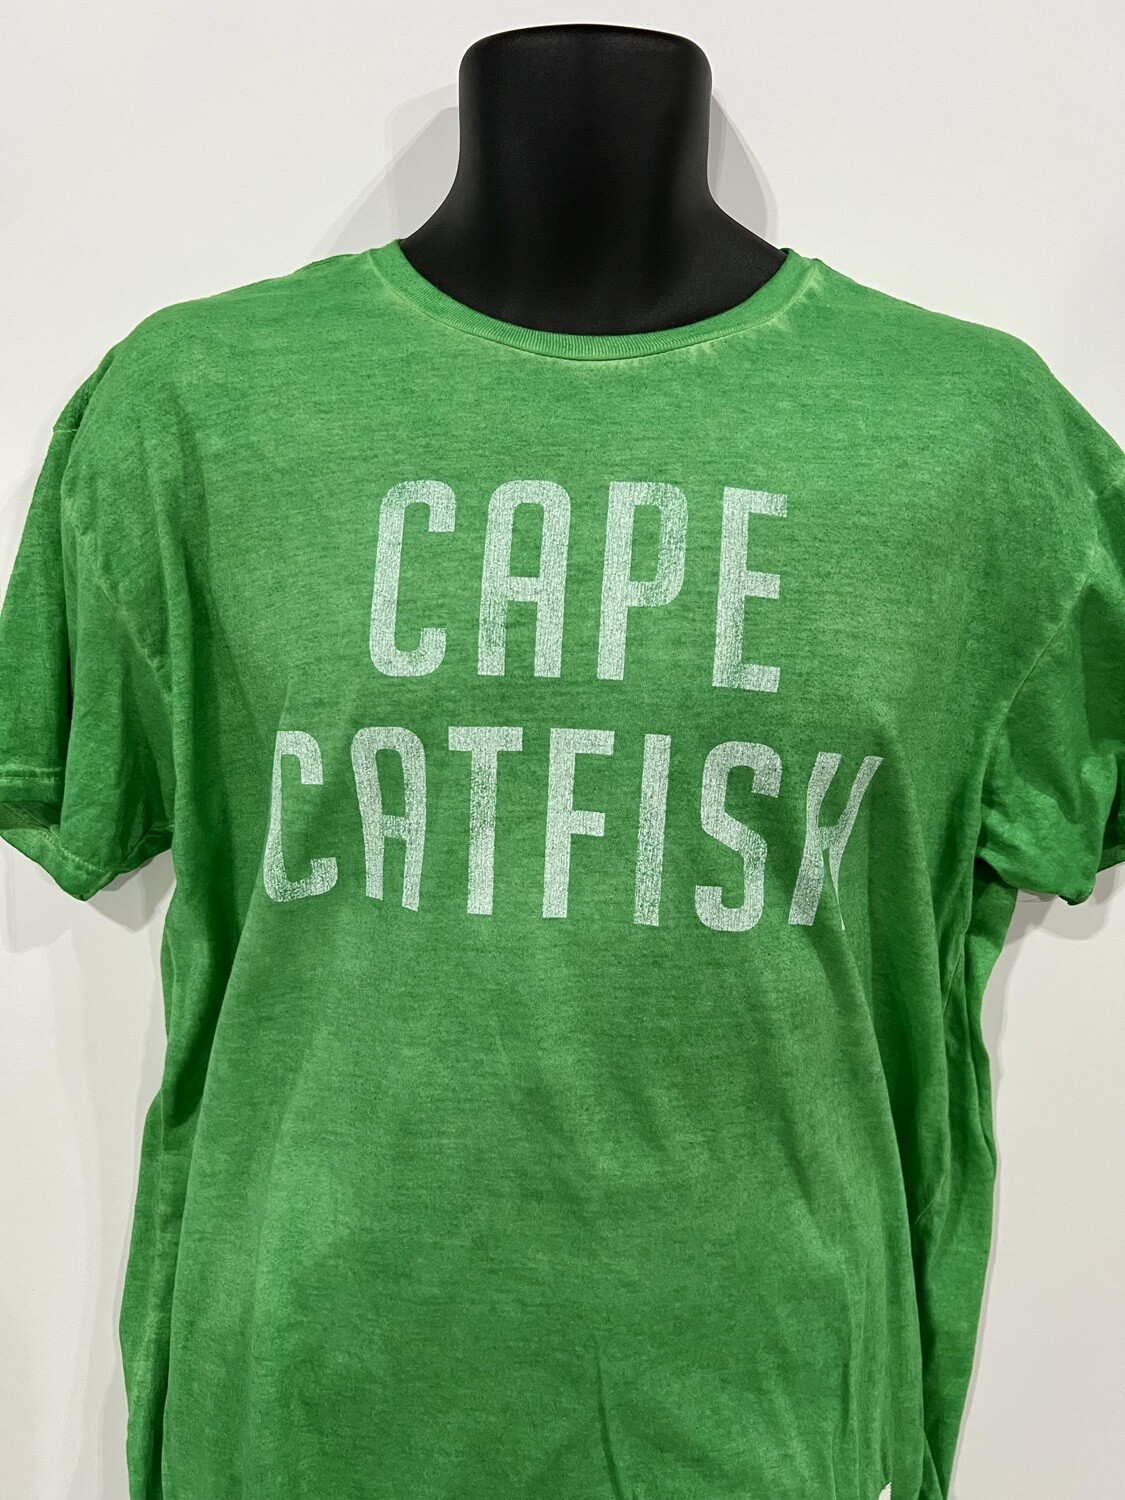 Retro Brand Green Unisex Cape Catfish Shirt